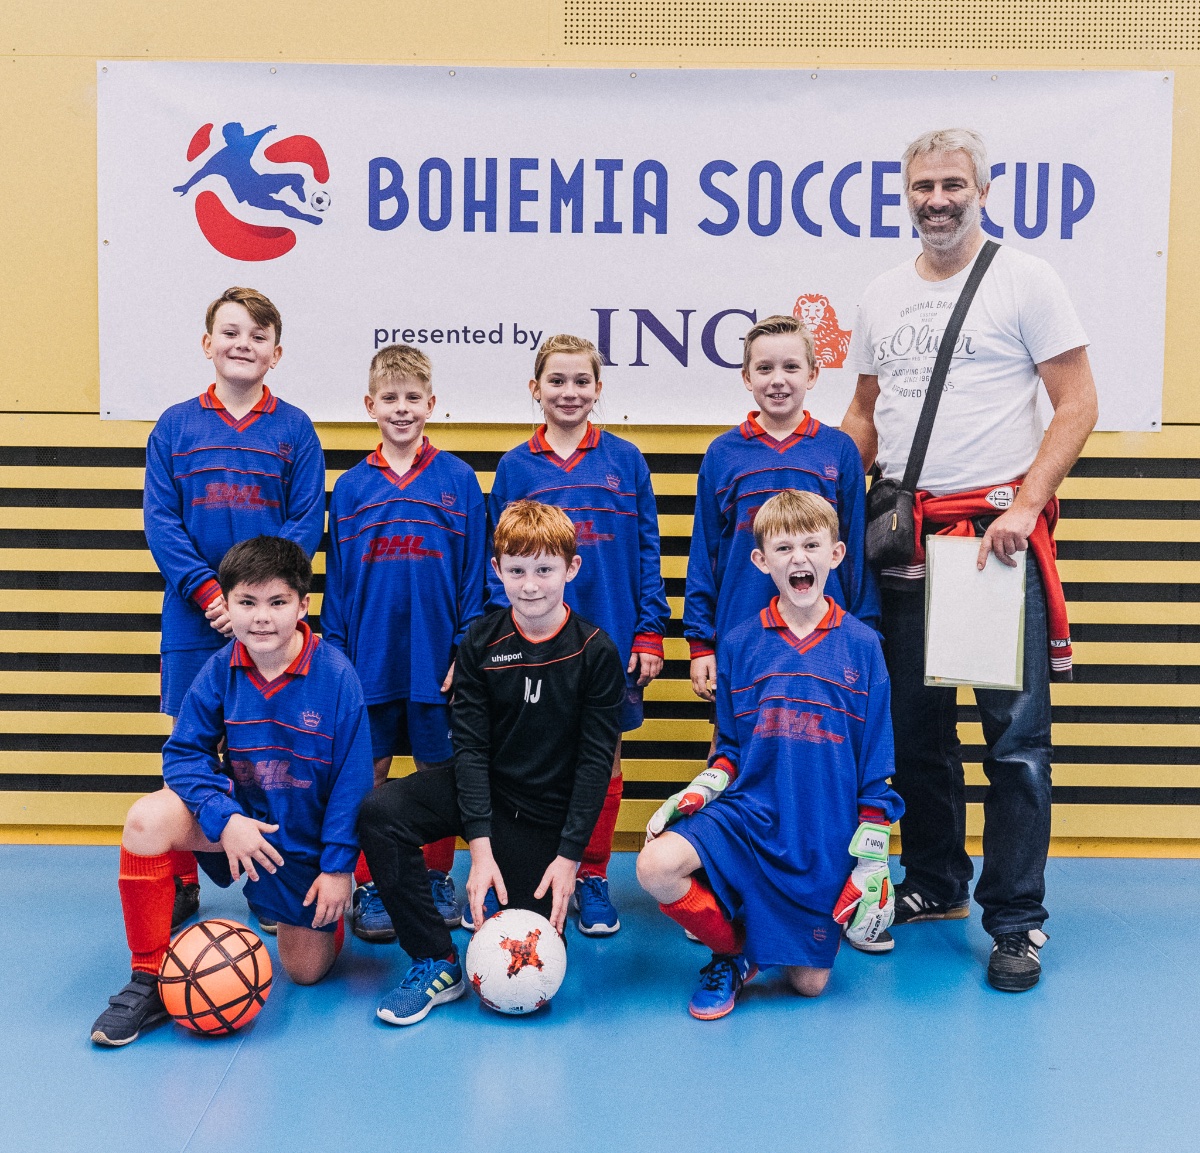 Zimní ING Bohemia Soccer Cup 2018 - kategorie U10